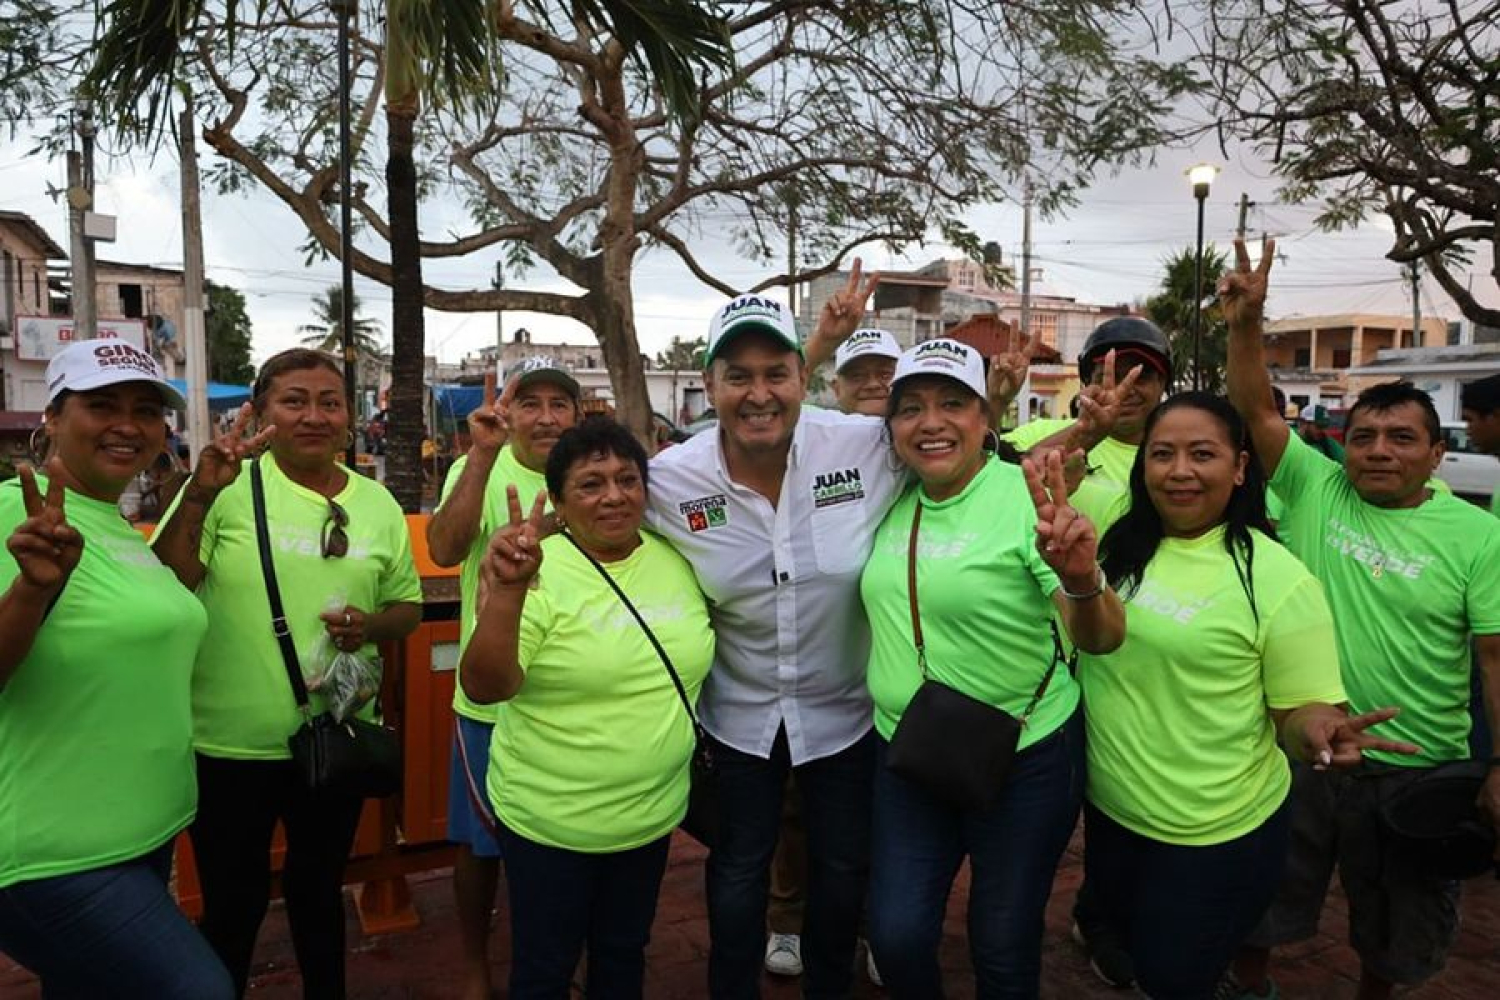 Juan Carrillo propone asegurar Vivienda Digna y Accesible para los Trabajadores